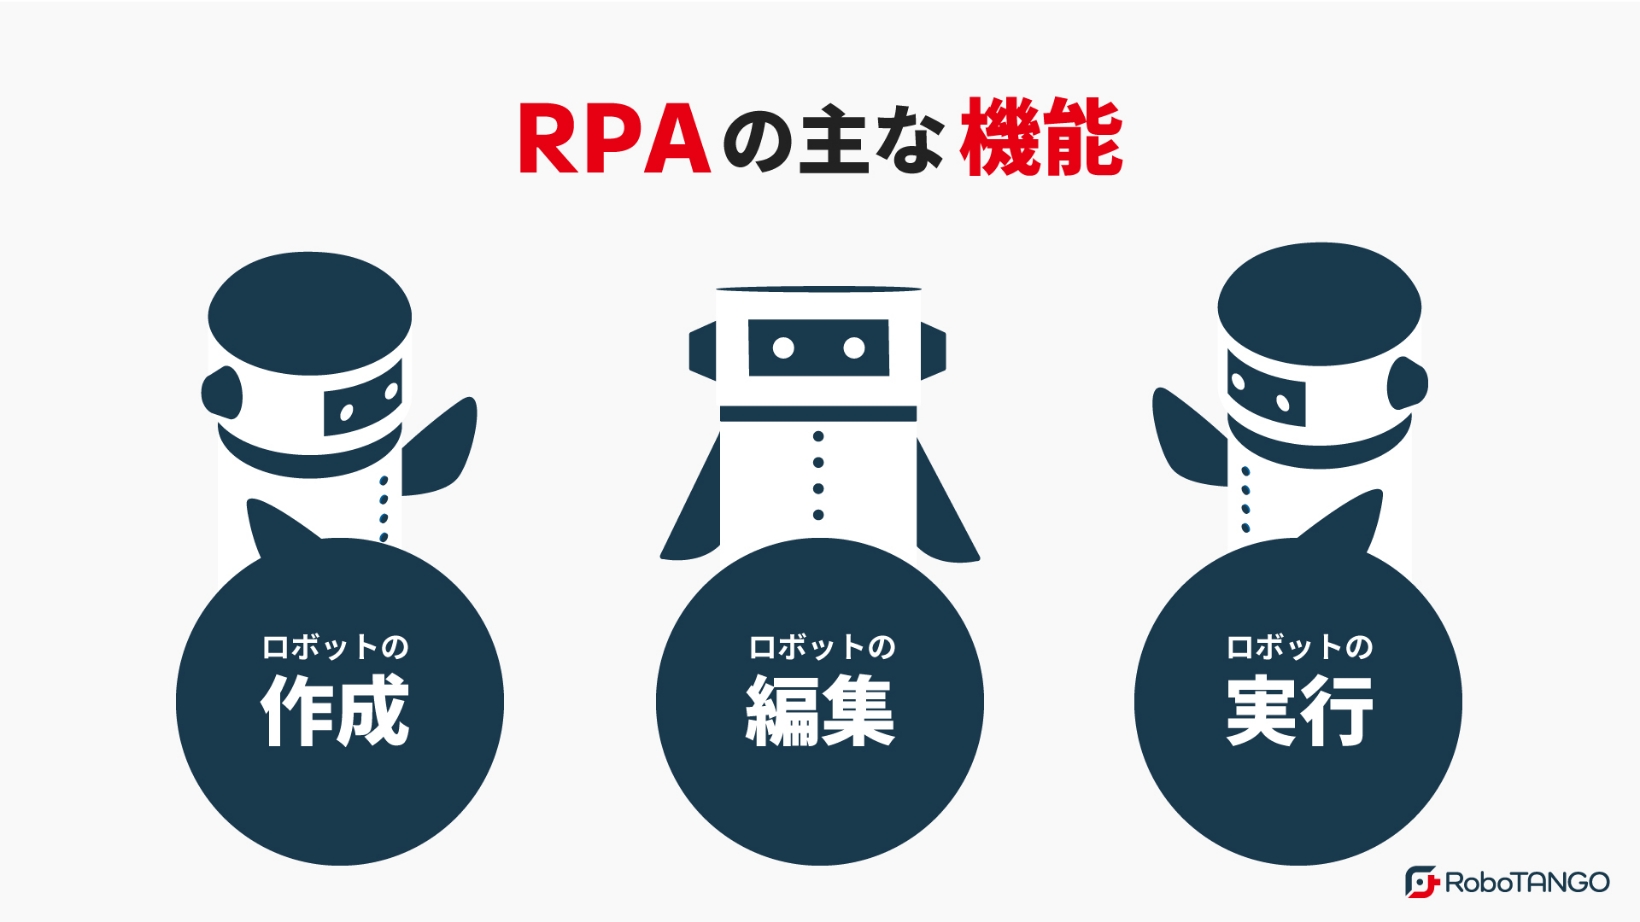 RPAの主な機能は「ロボットの作成」「ロボットの編集」「ロボットの実行」の3つです。